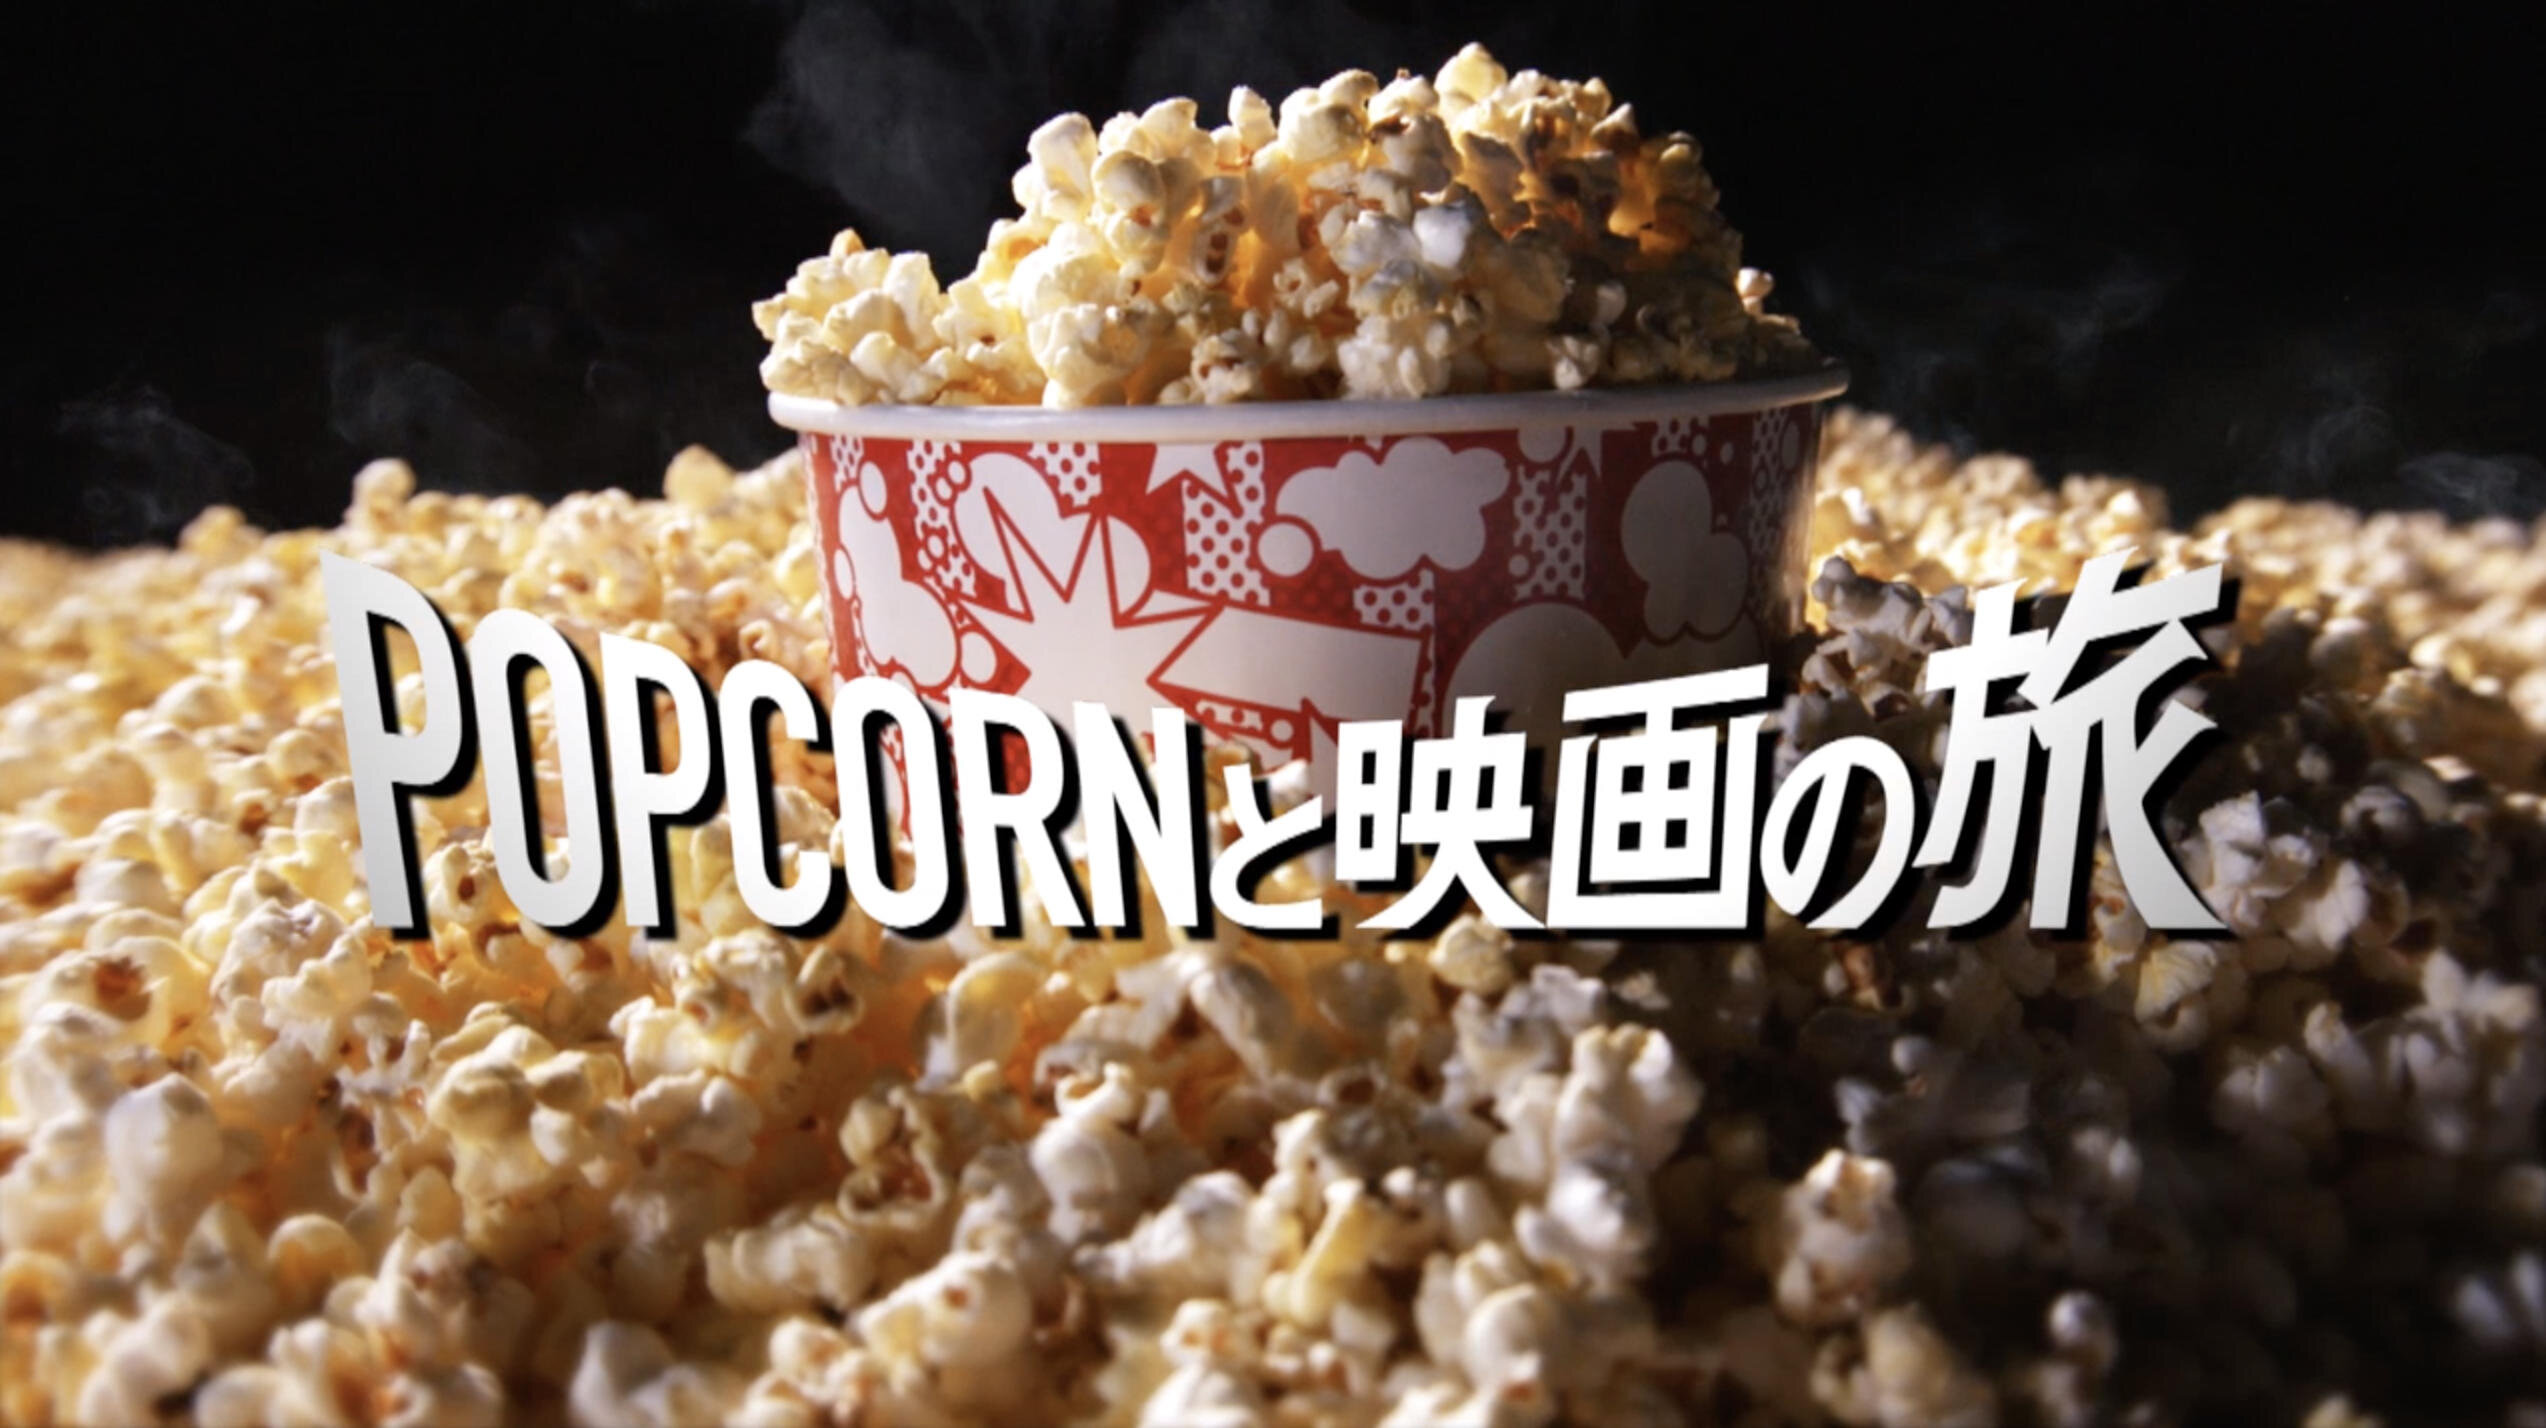 TOHO CINEMAS
Popcorn Cinema Ad